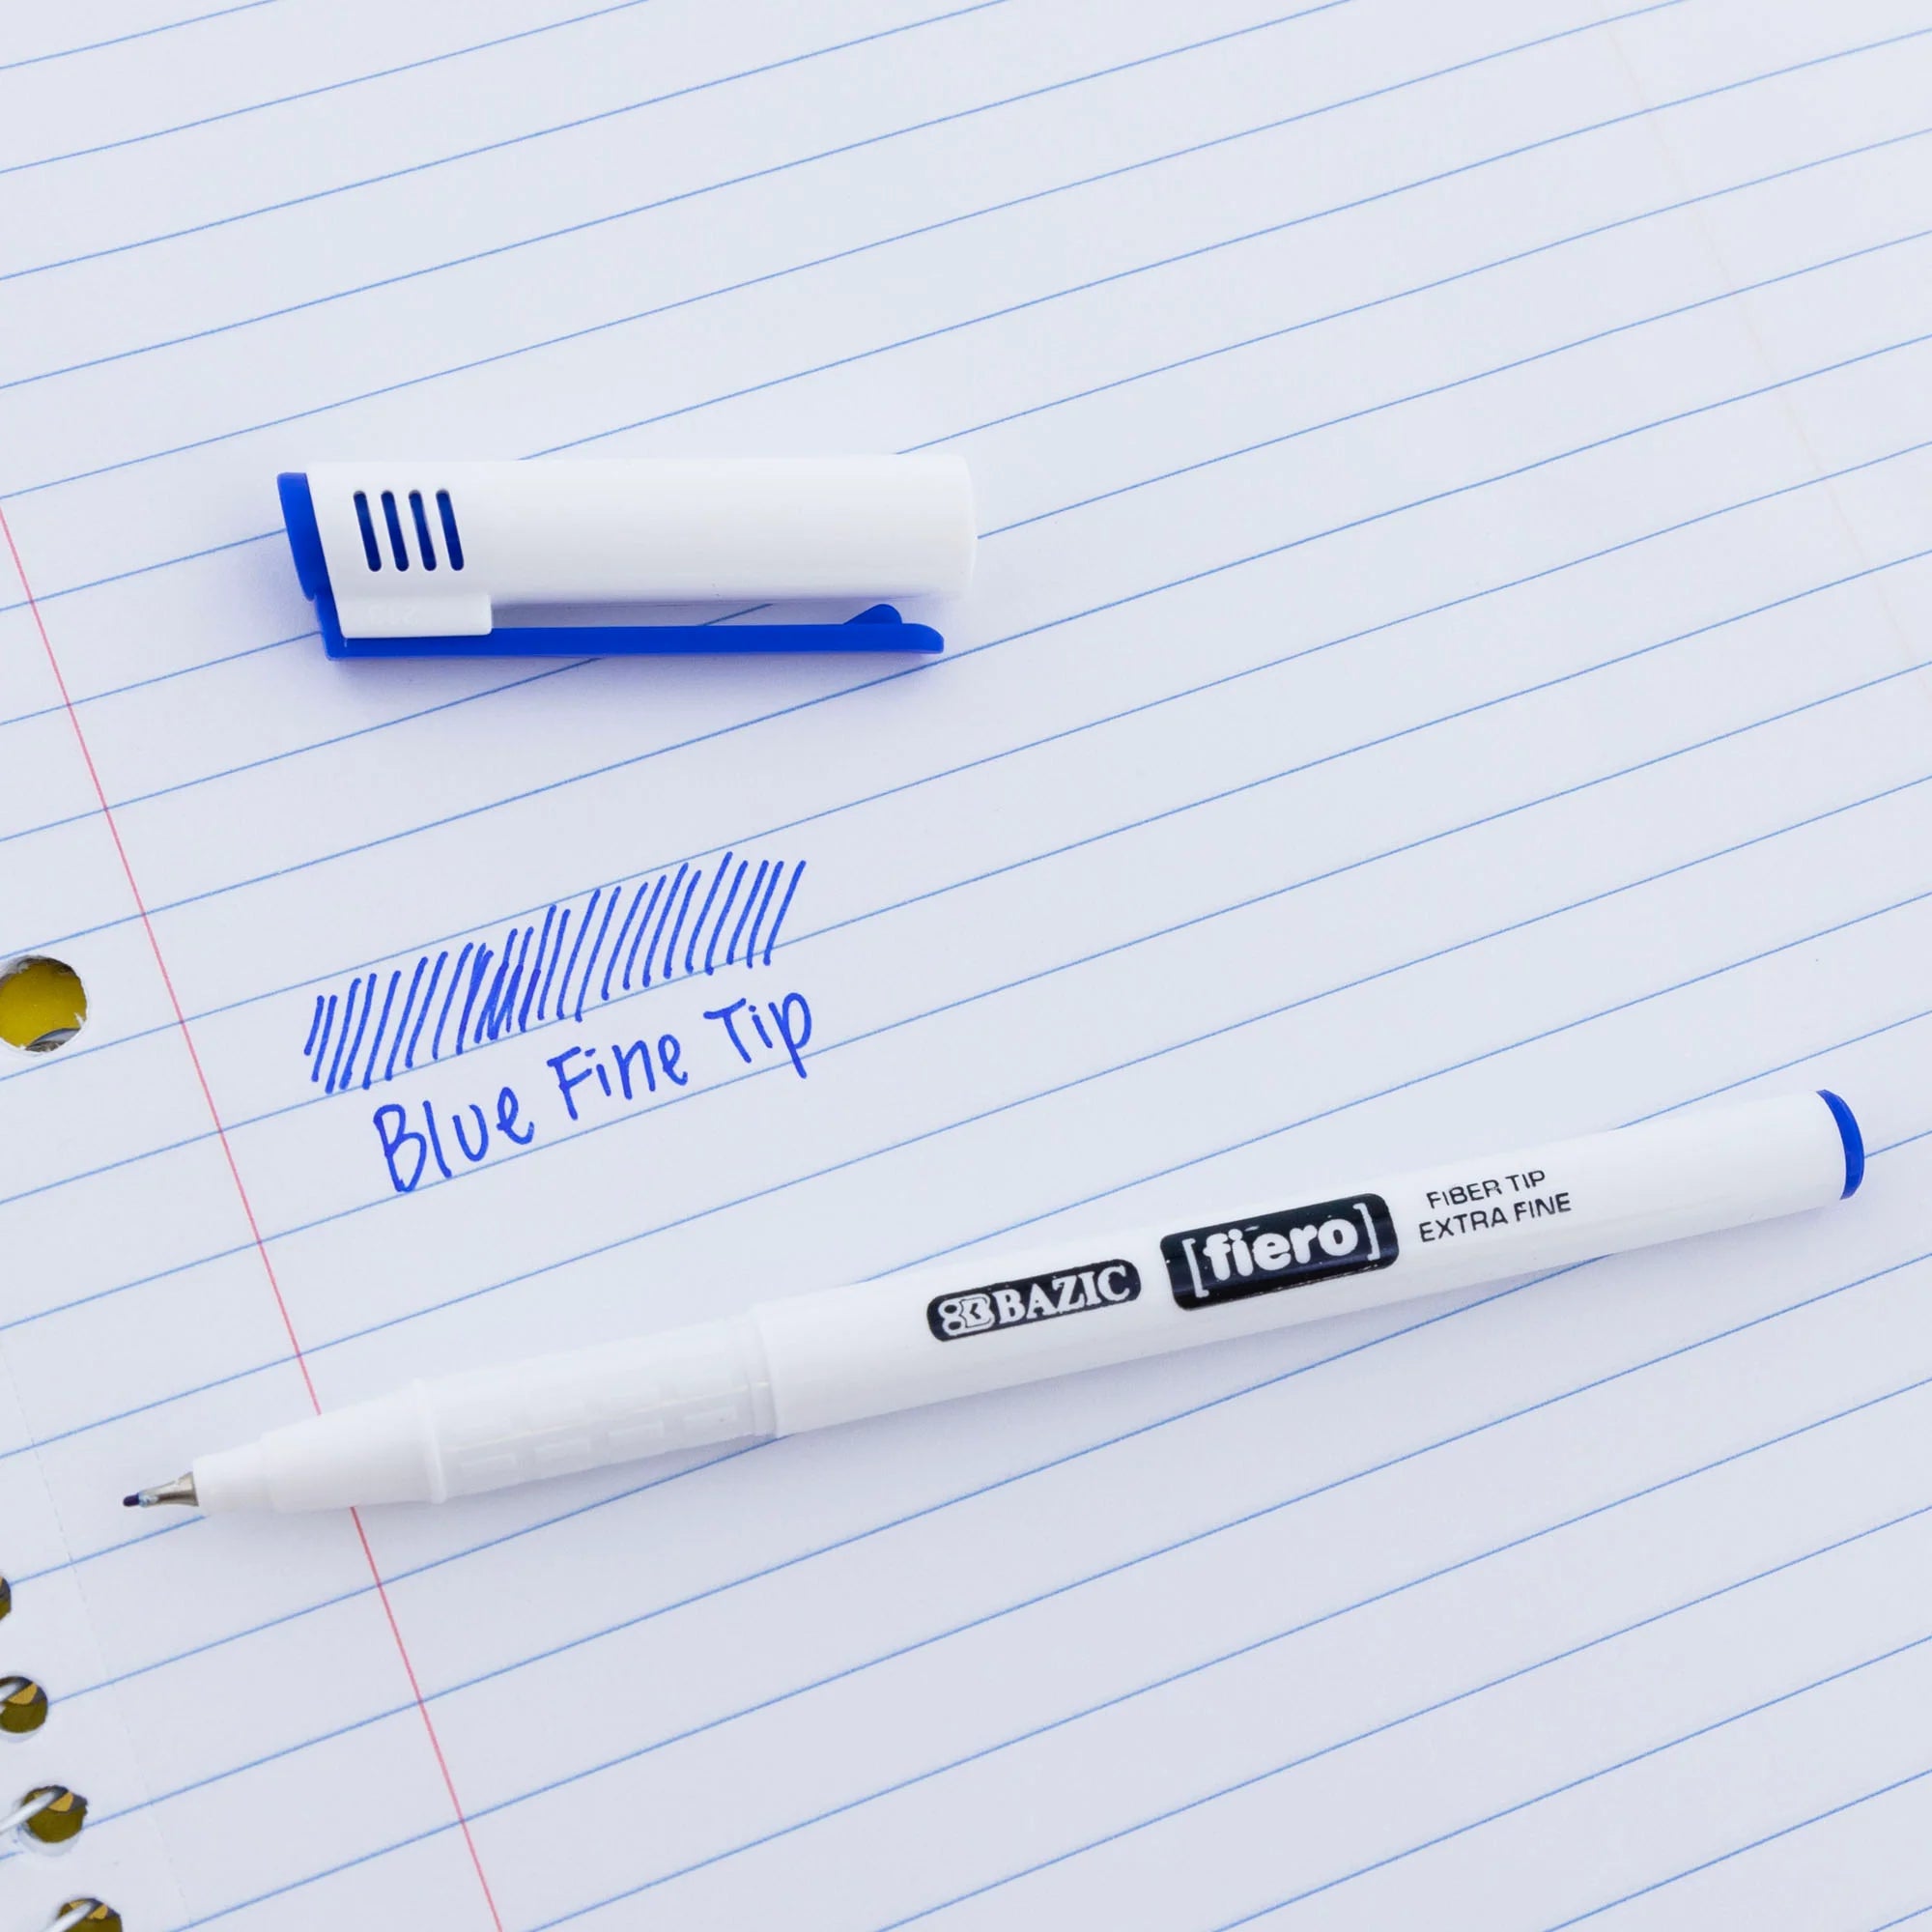 Bazic Fiero Blue Fiber Tip Fineliner Pen